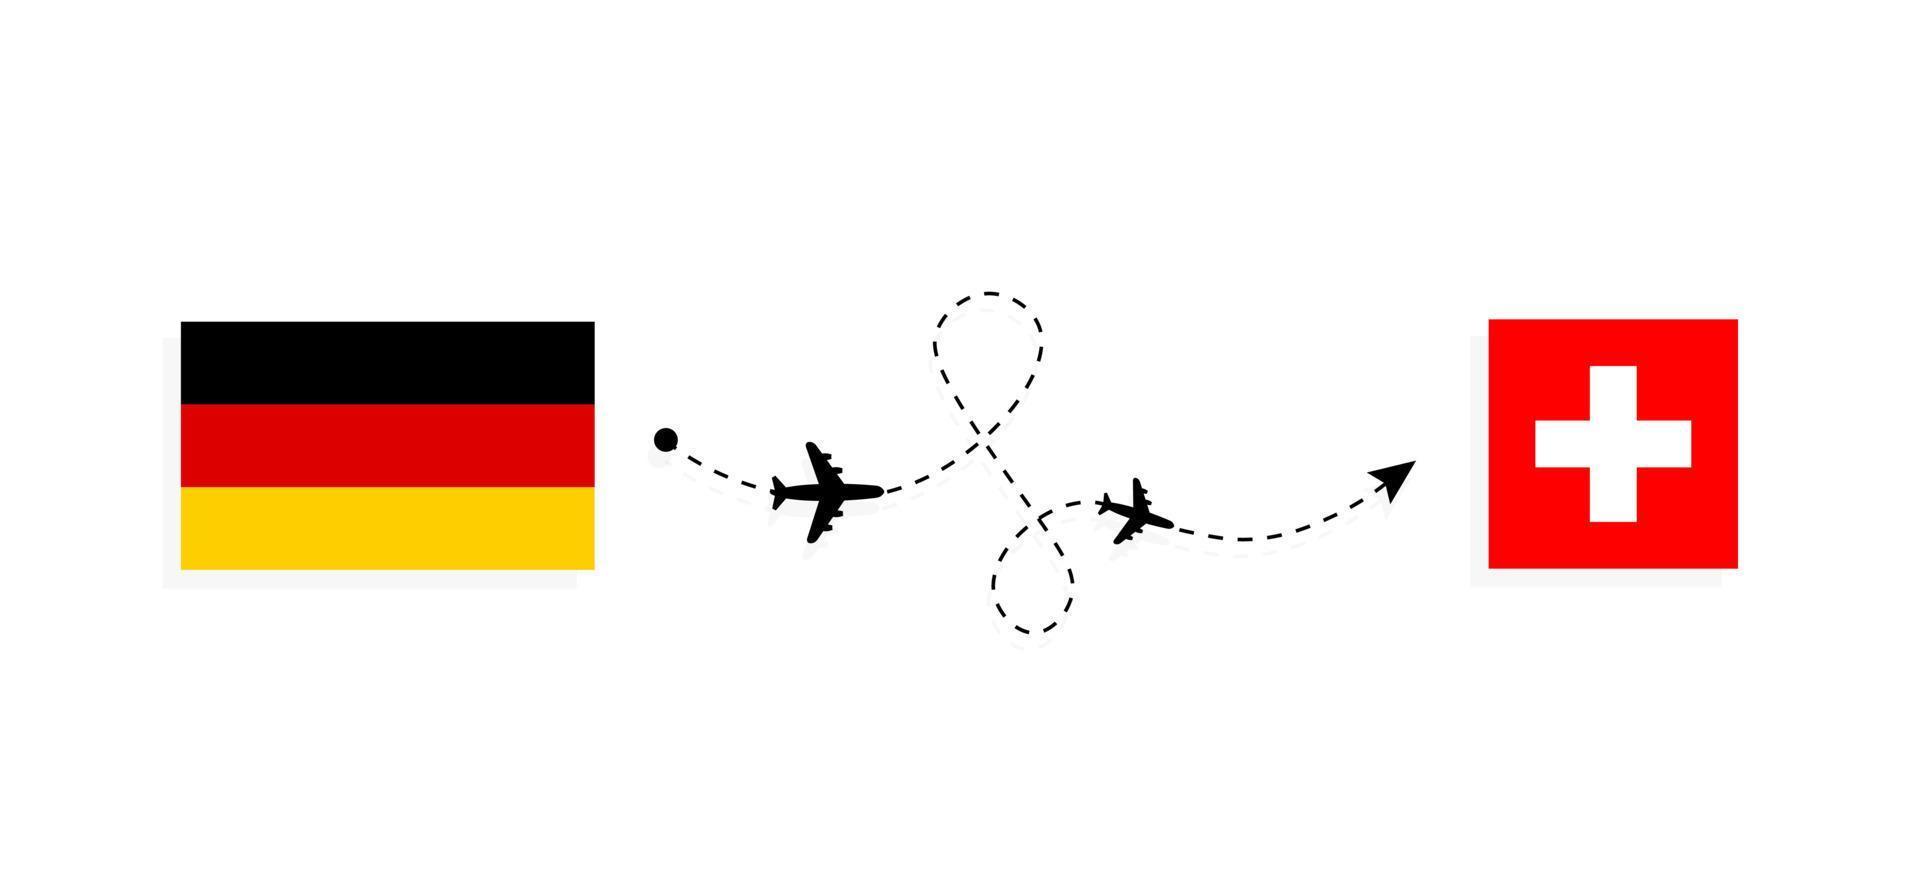 Vuelo y viaje desde Alemania a Suiza en avión de pasajeros concepto de viaje vector